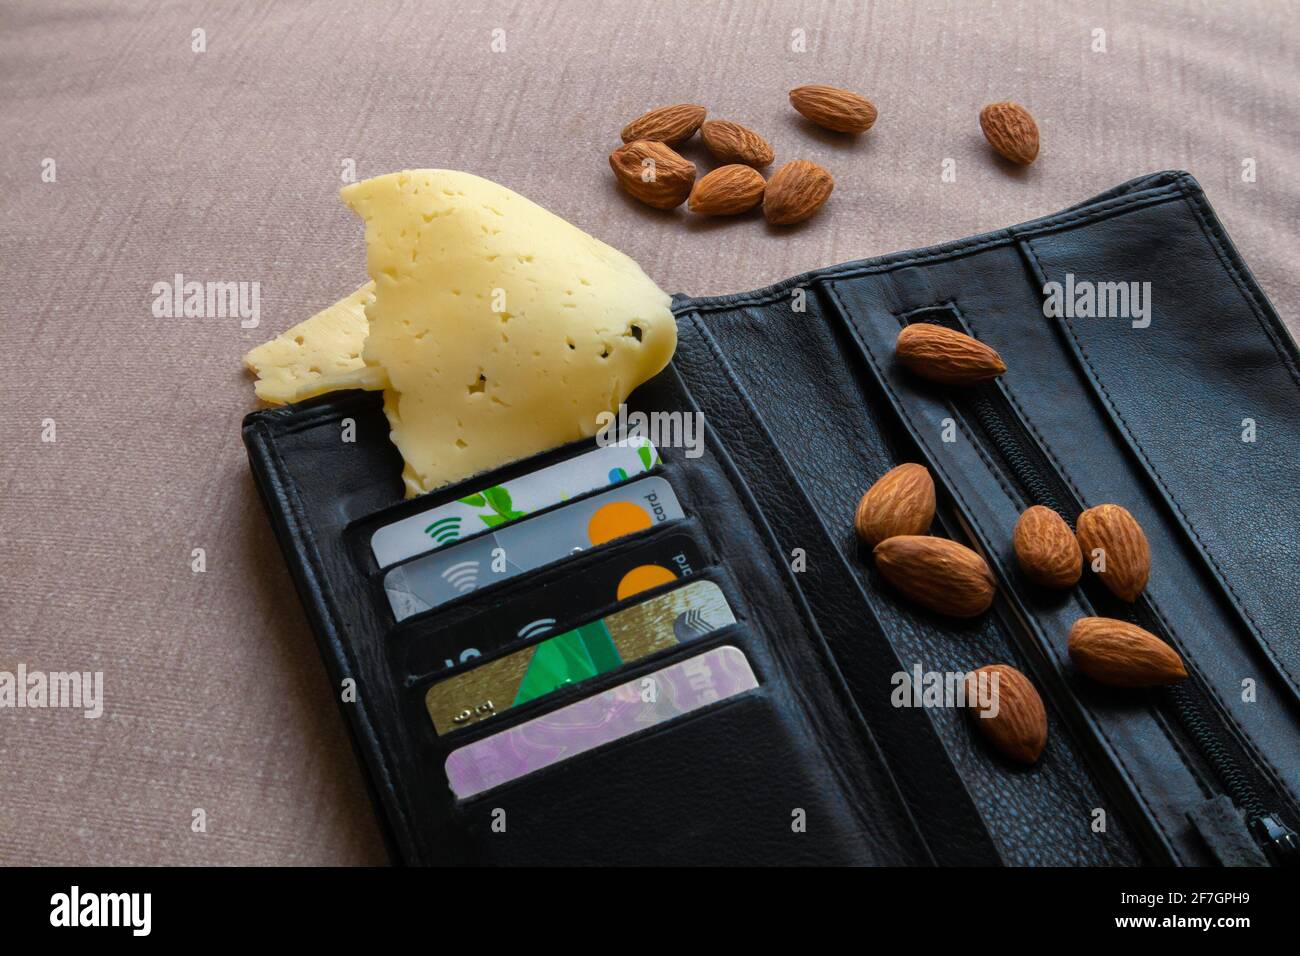 Foto-Witz, schwarze Ledertasche mit Kreditkarten, Mandel und Stück Käse, absurdes Foto Stockfoto